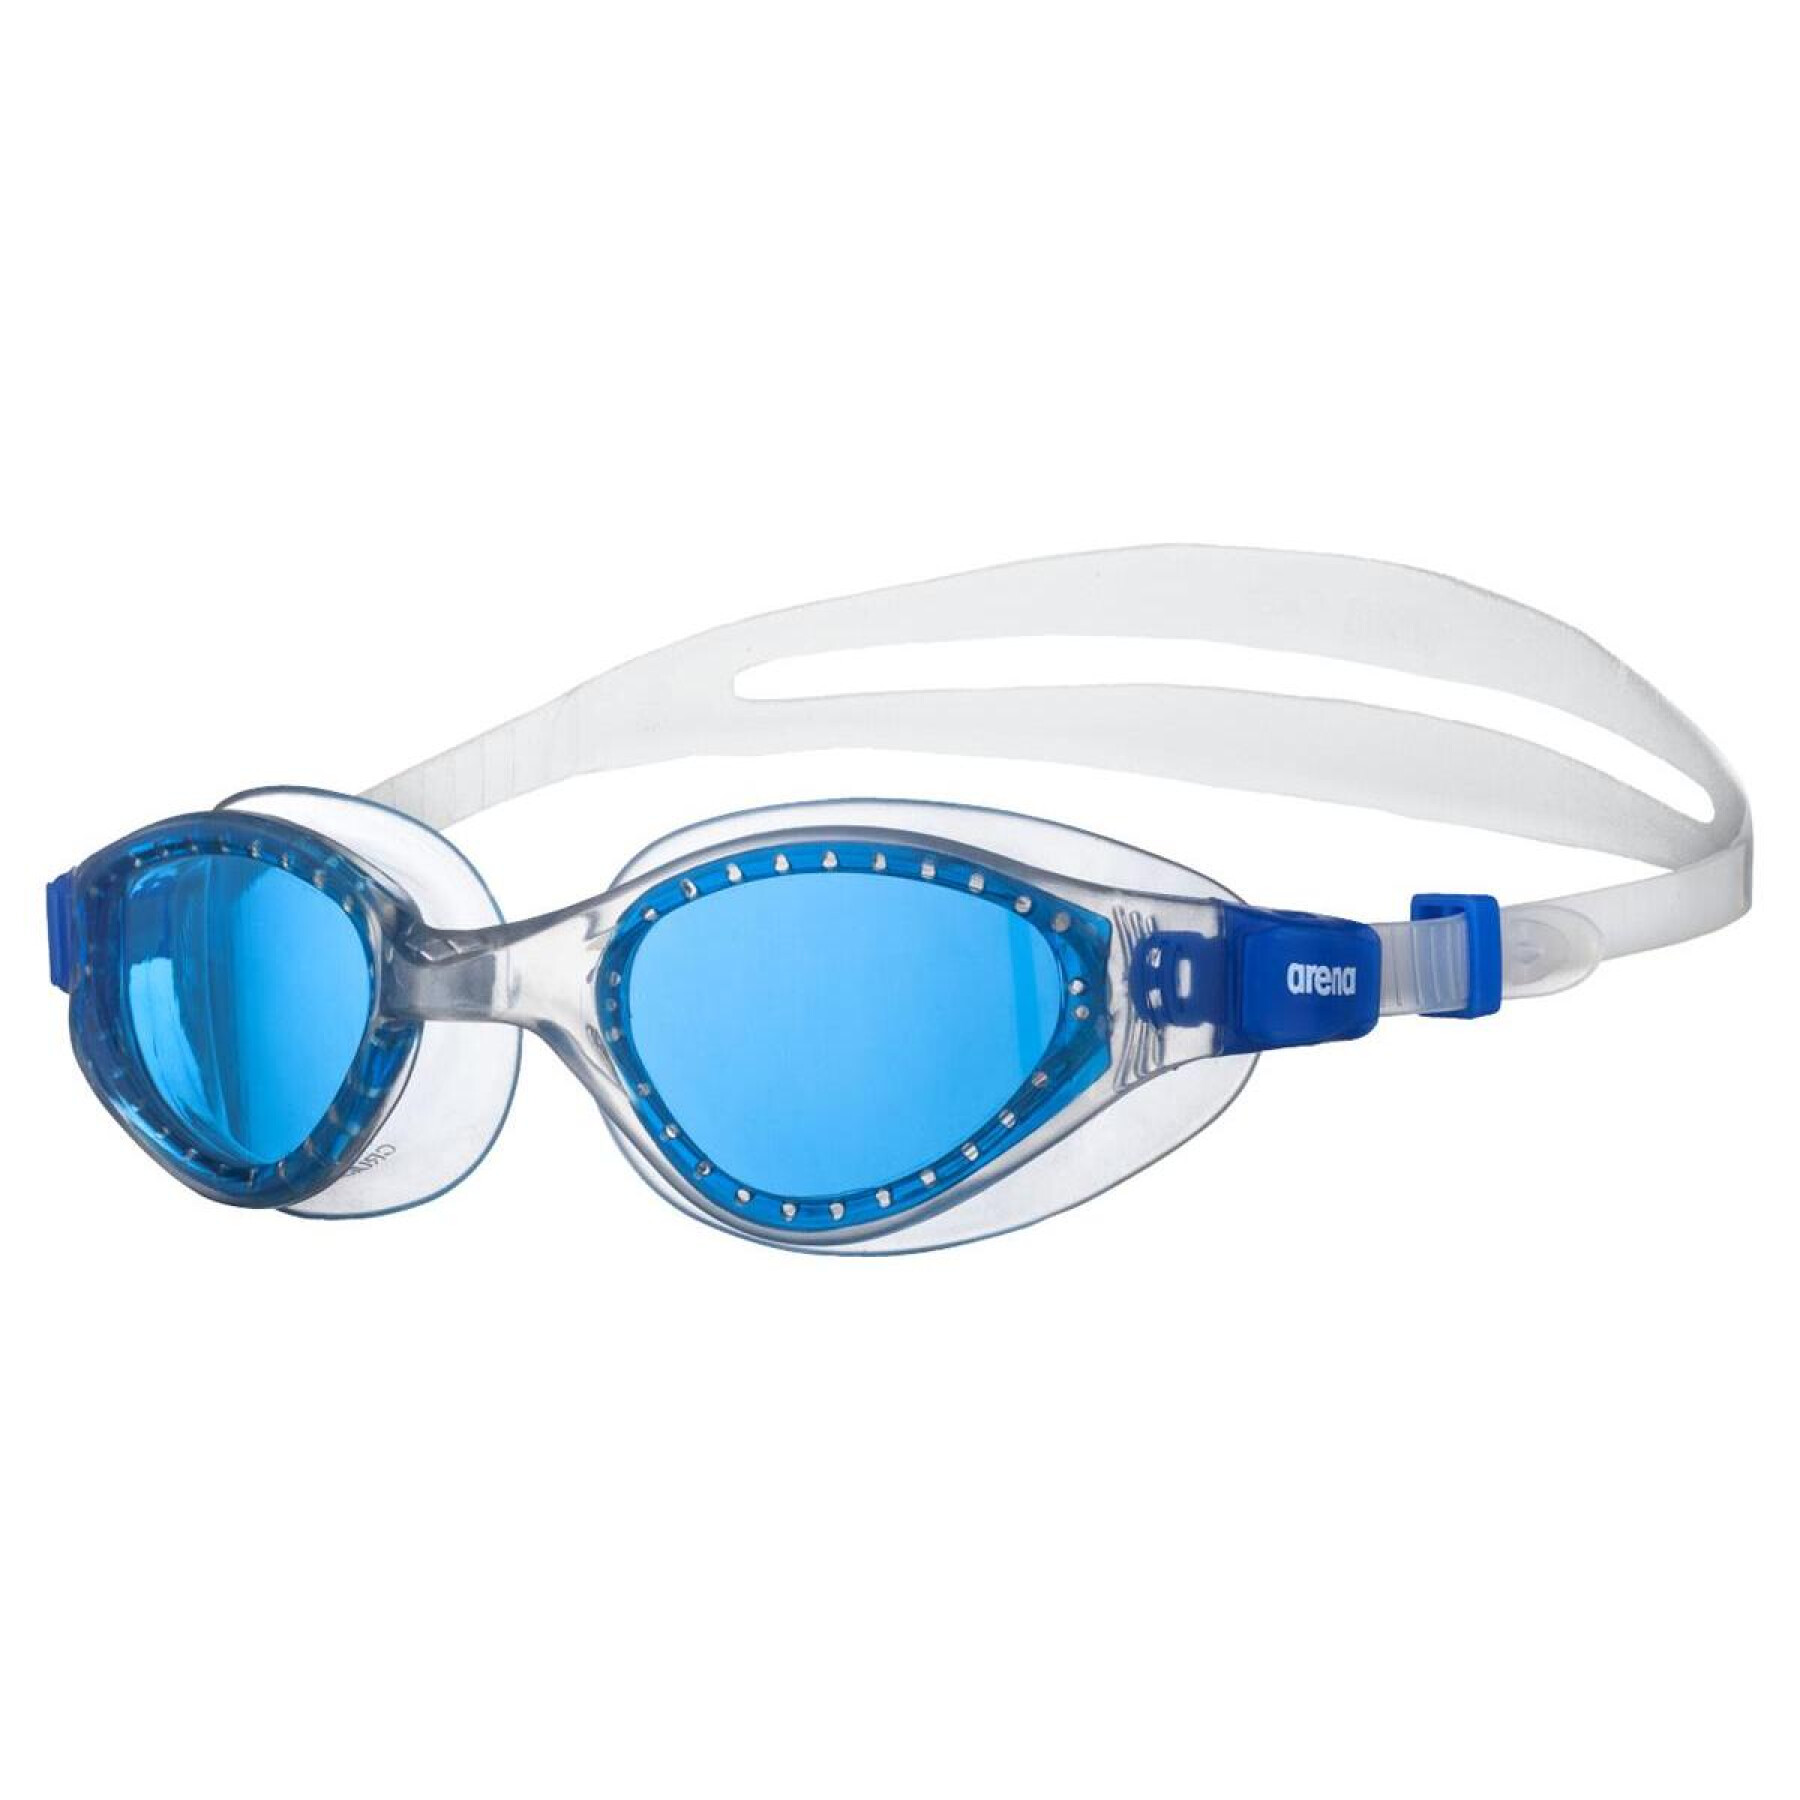 Children's swimming goggles Arena Cruiser Evo